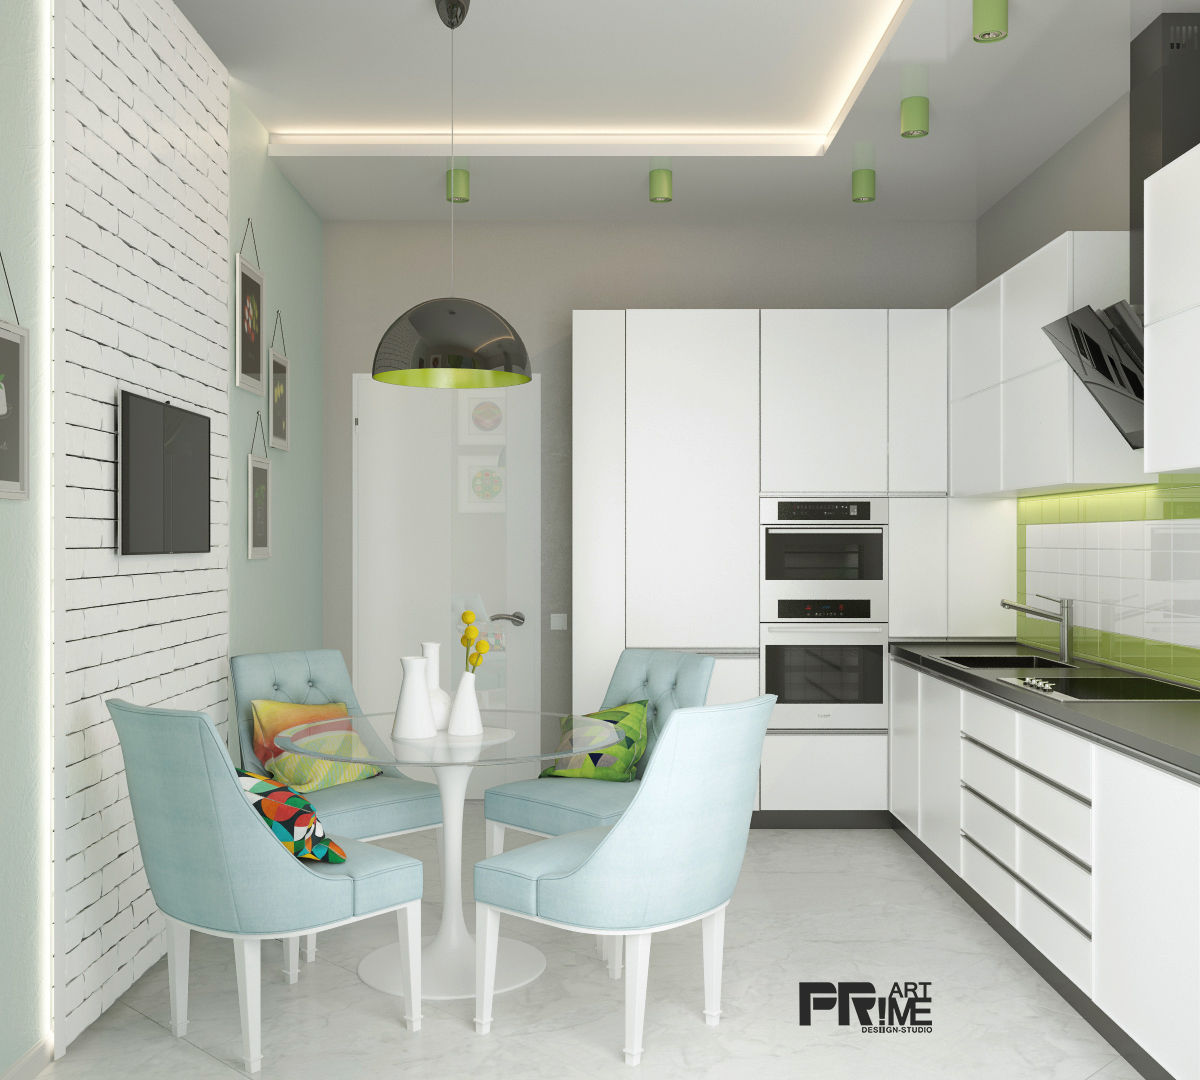 Из двухкомнатной квартиры сделали трехкомнатную и кабинет-гостевая!, "PRimeART" 'PRimeART' Cuisine minimaliste